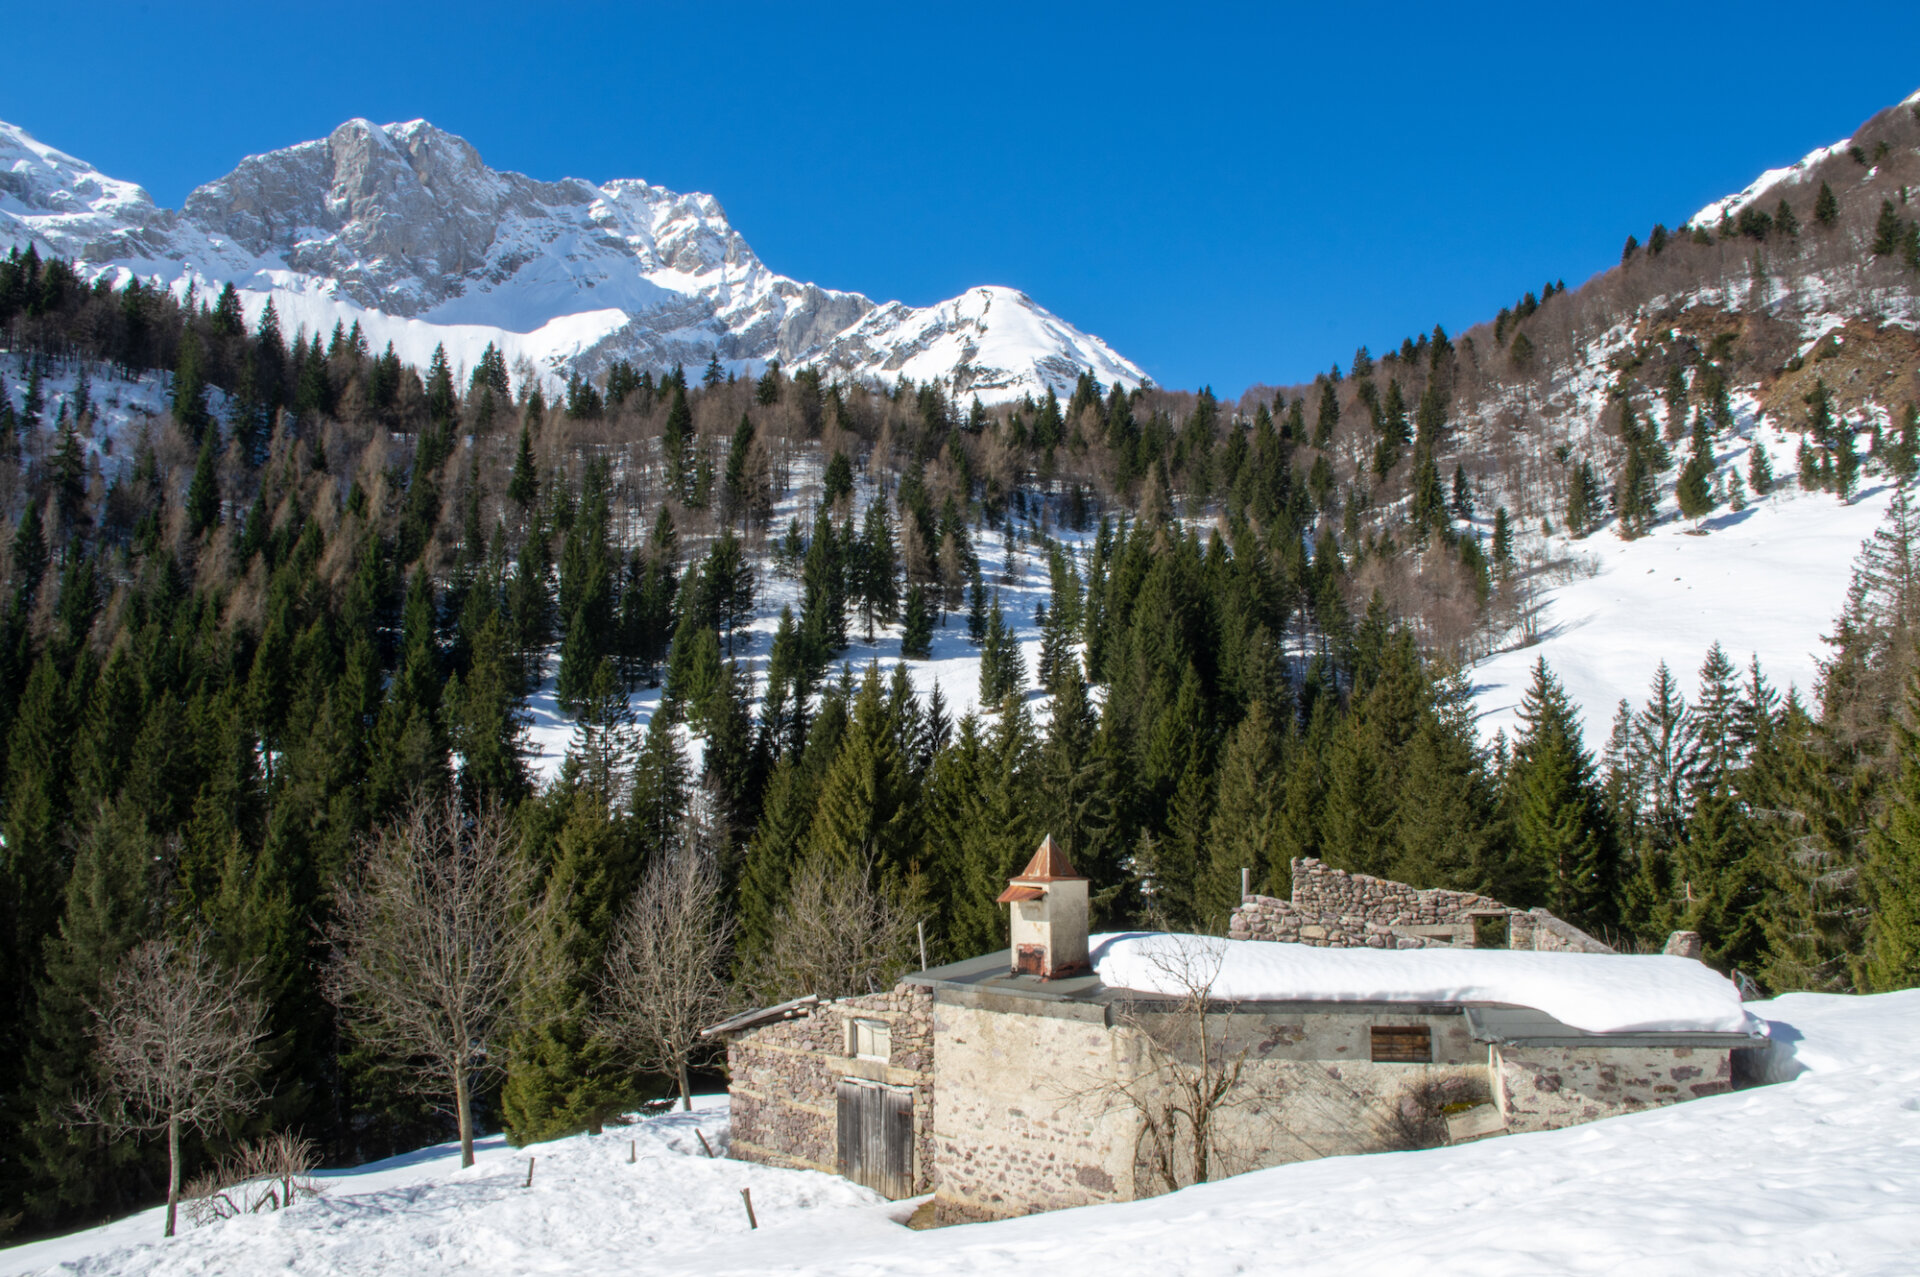 2 - Gita al rifugio Alpe Corte, lago Branchino e passo dei laghi gemelli online